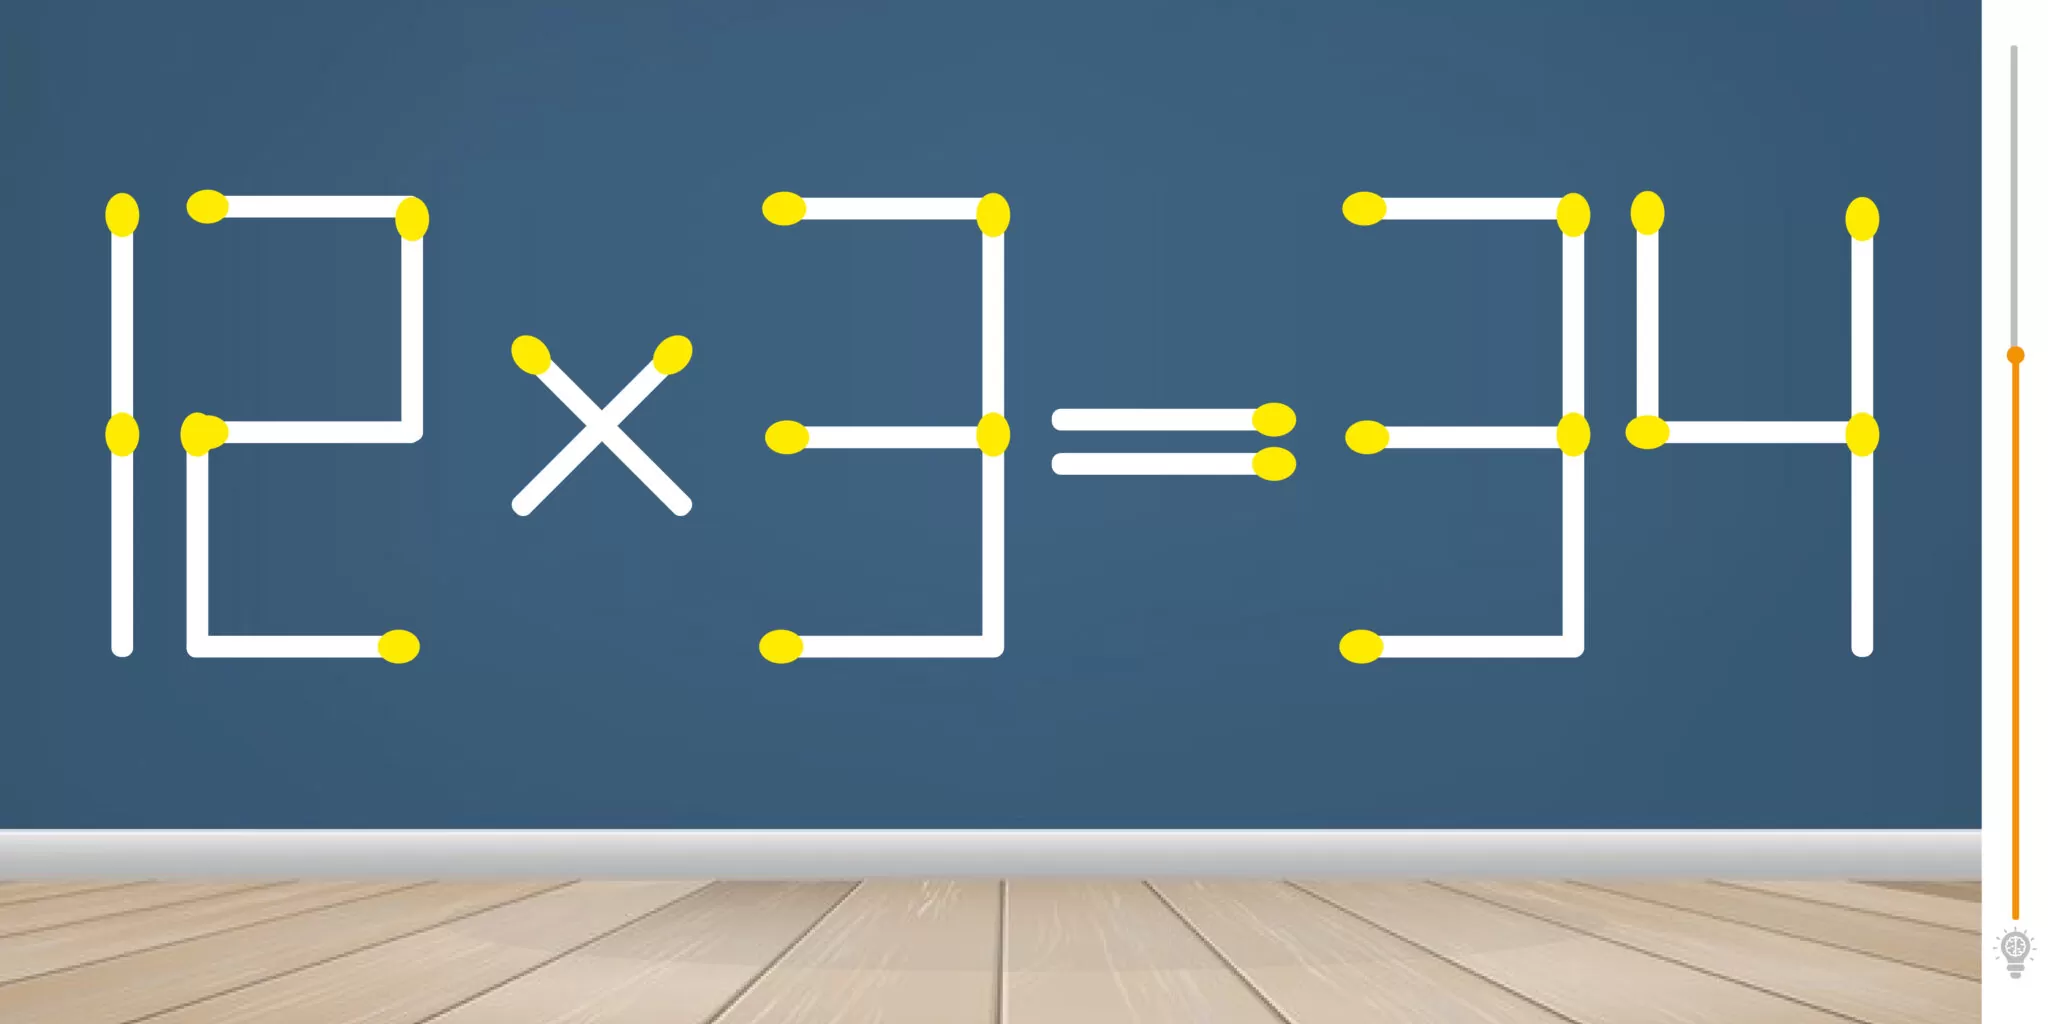 Enigma matemático: teste seu QI e encontre a solução movendo apenas 2 partidas!